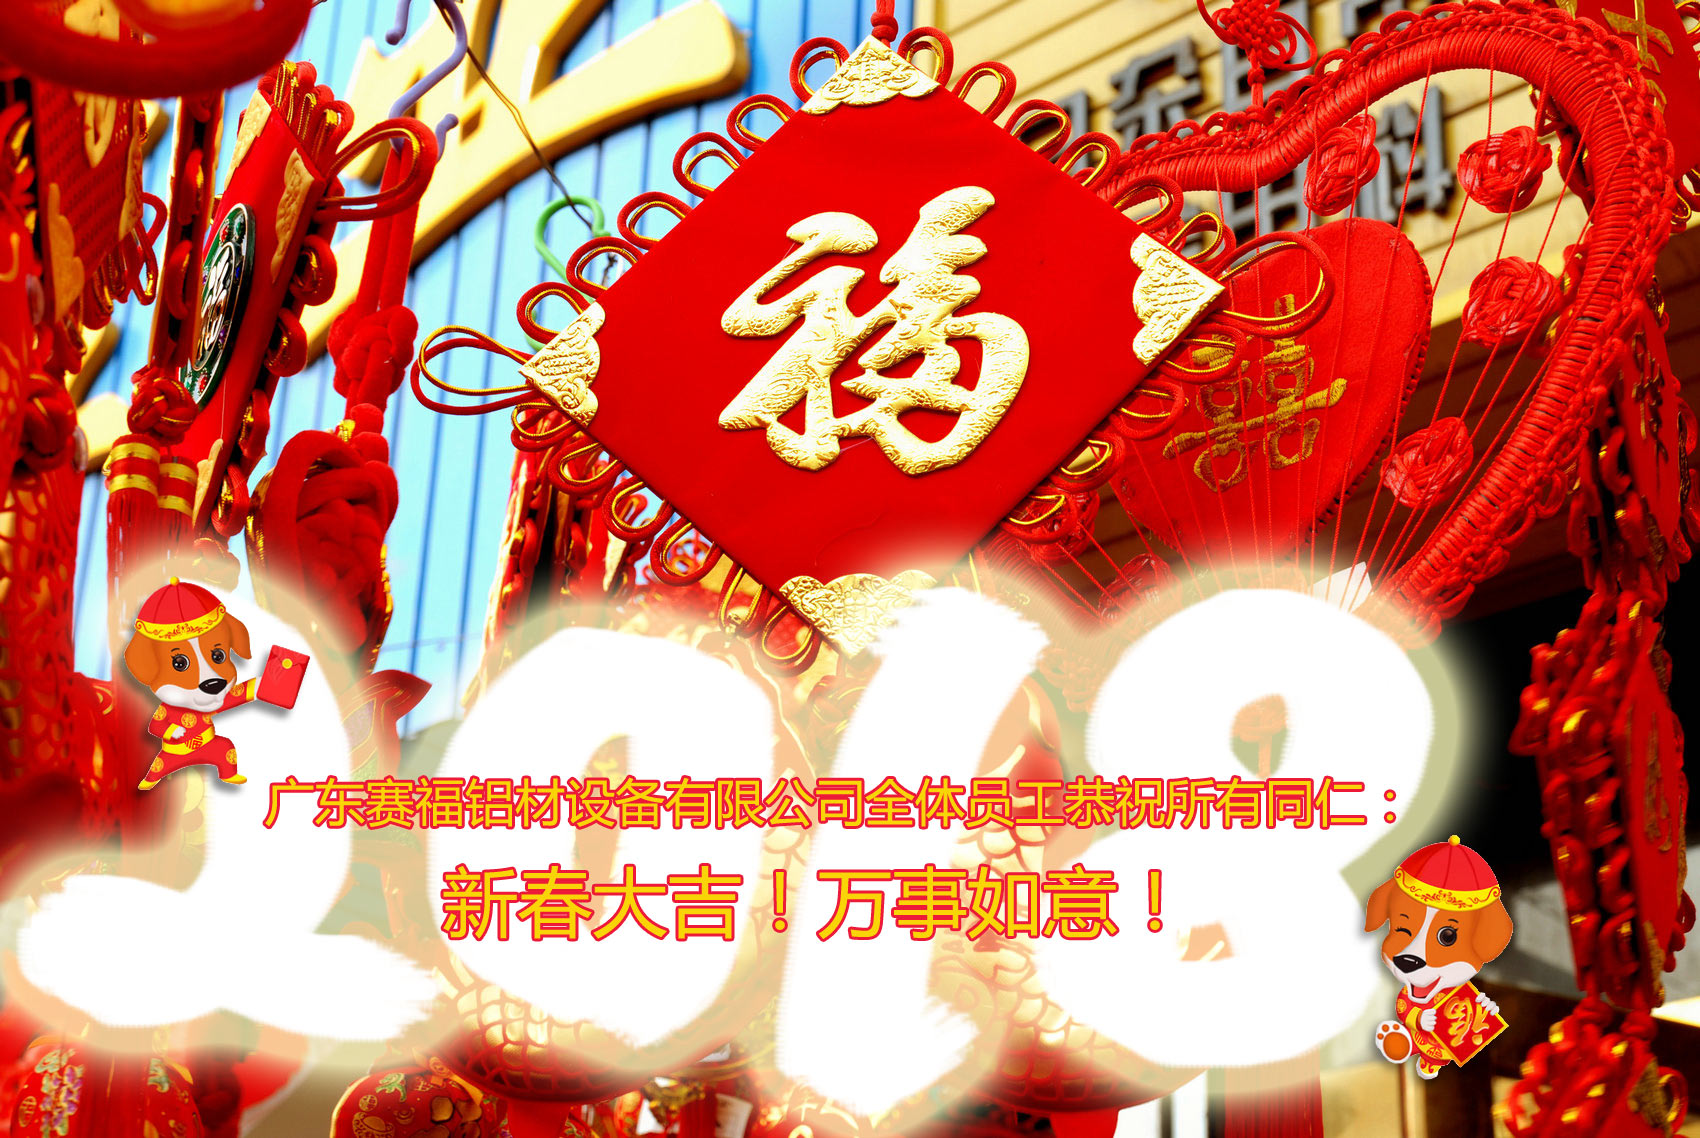 广东赛福铝材设备有限公司全体员工恭祝所有同仁：         新春大吉！万事如意！